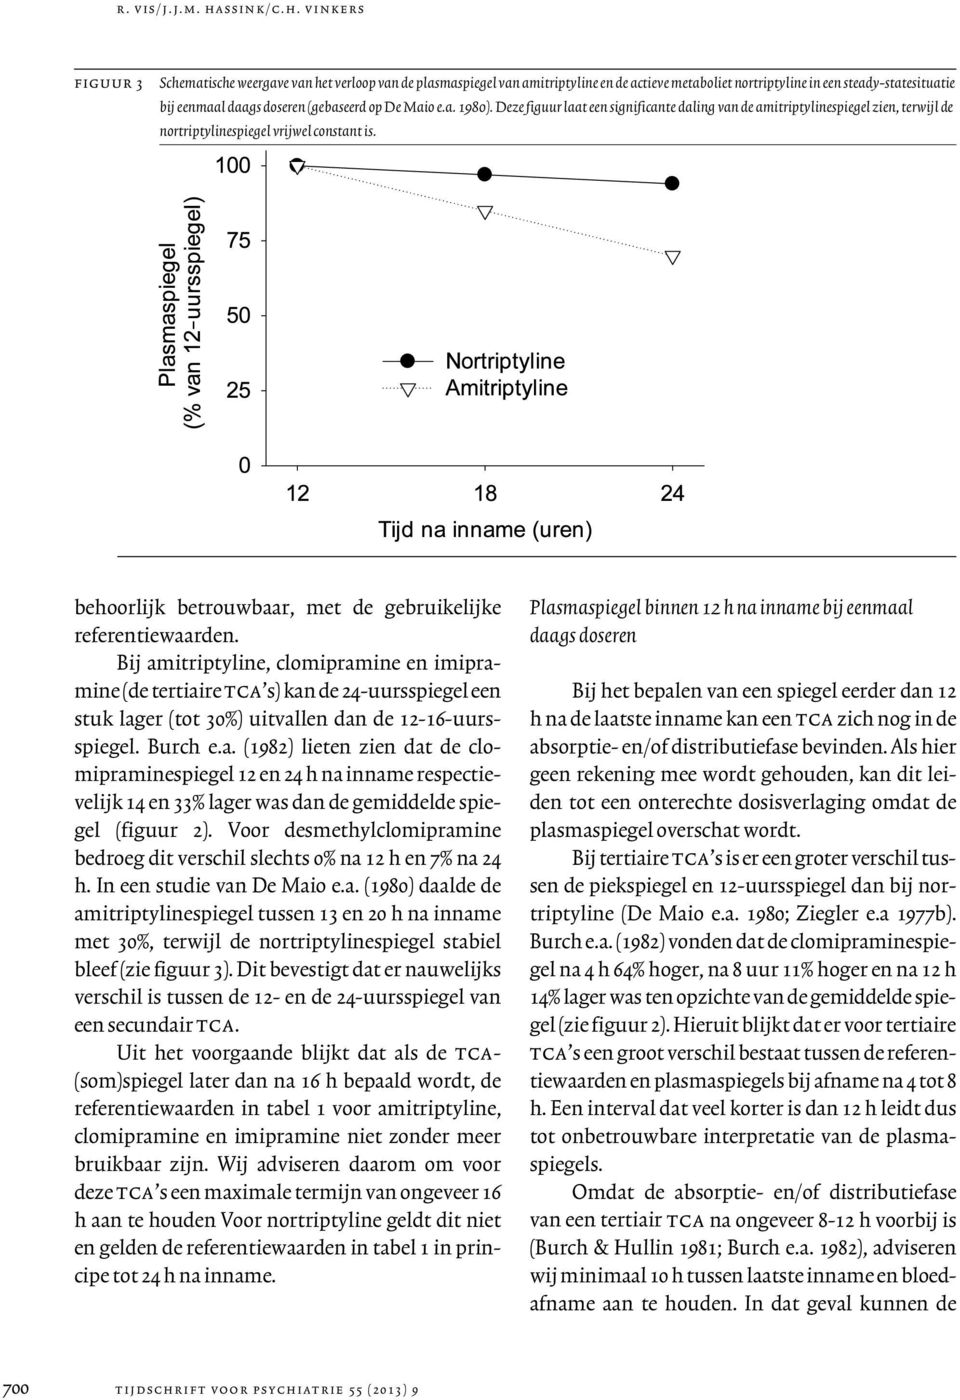 vinkers figuur 3 Schematische weergave van het verloop van de plasmaspiegel van amitriptyline en de actieve metaboliet nortriptyline in een steady-statesituatie bij eenmaal daags doseren (gebaseerd